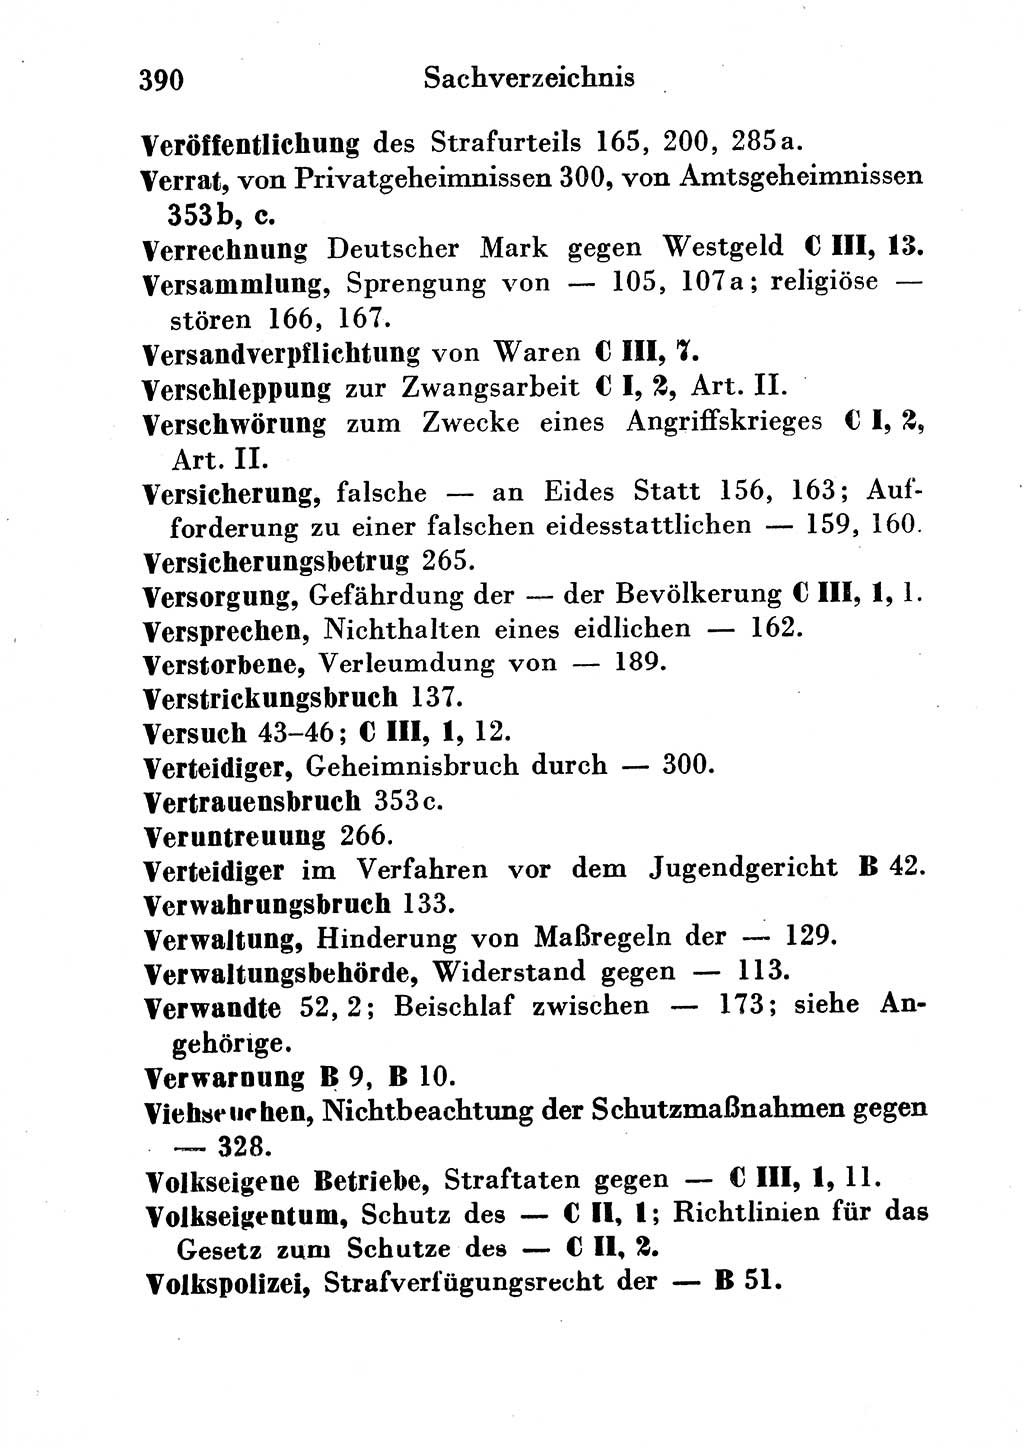 Strafgesetzbuch (StGB) und andere Strafgesetze [Deutsche Demokratische Republik (DDR)] 1954, Seite 390 (StGB Strafges. DDR 1954, S. 390)